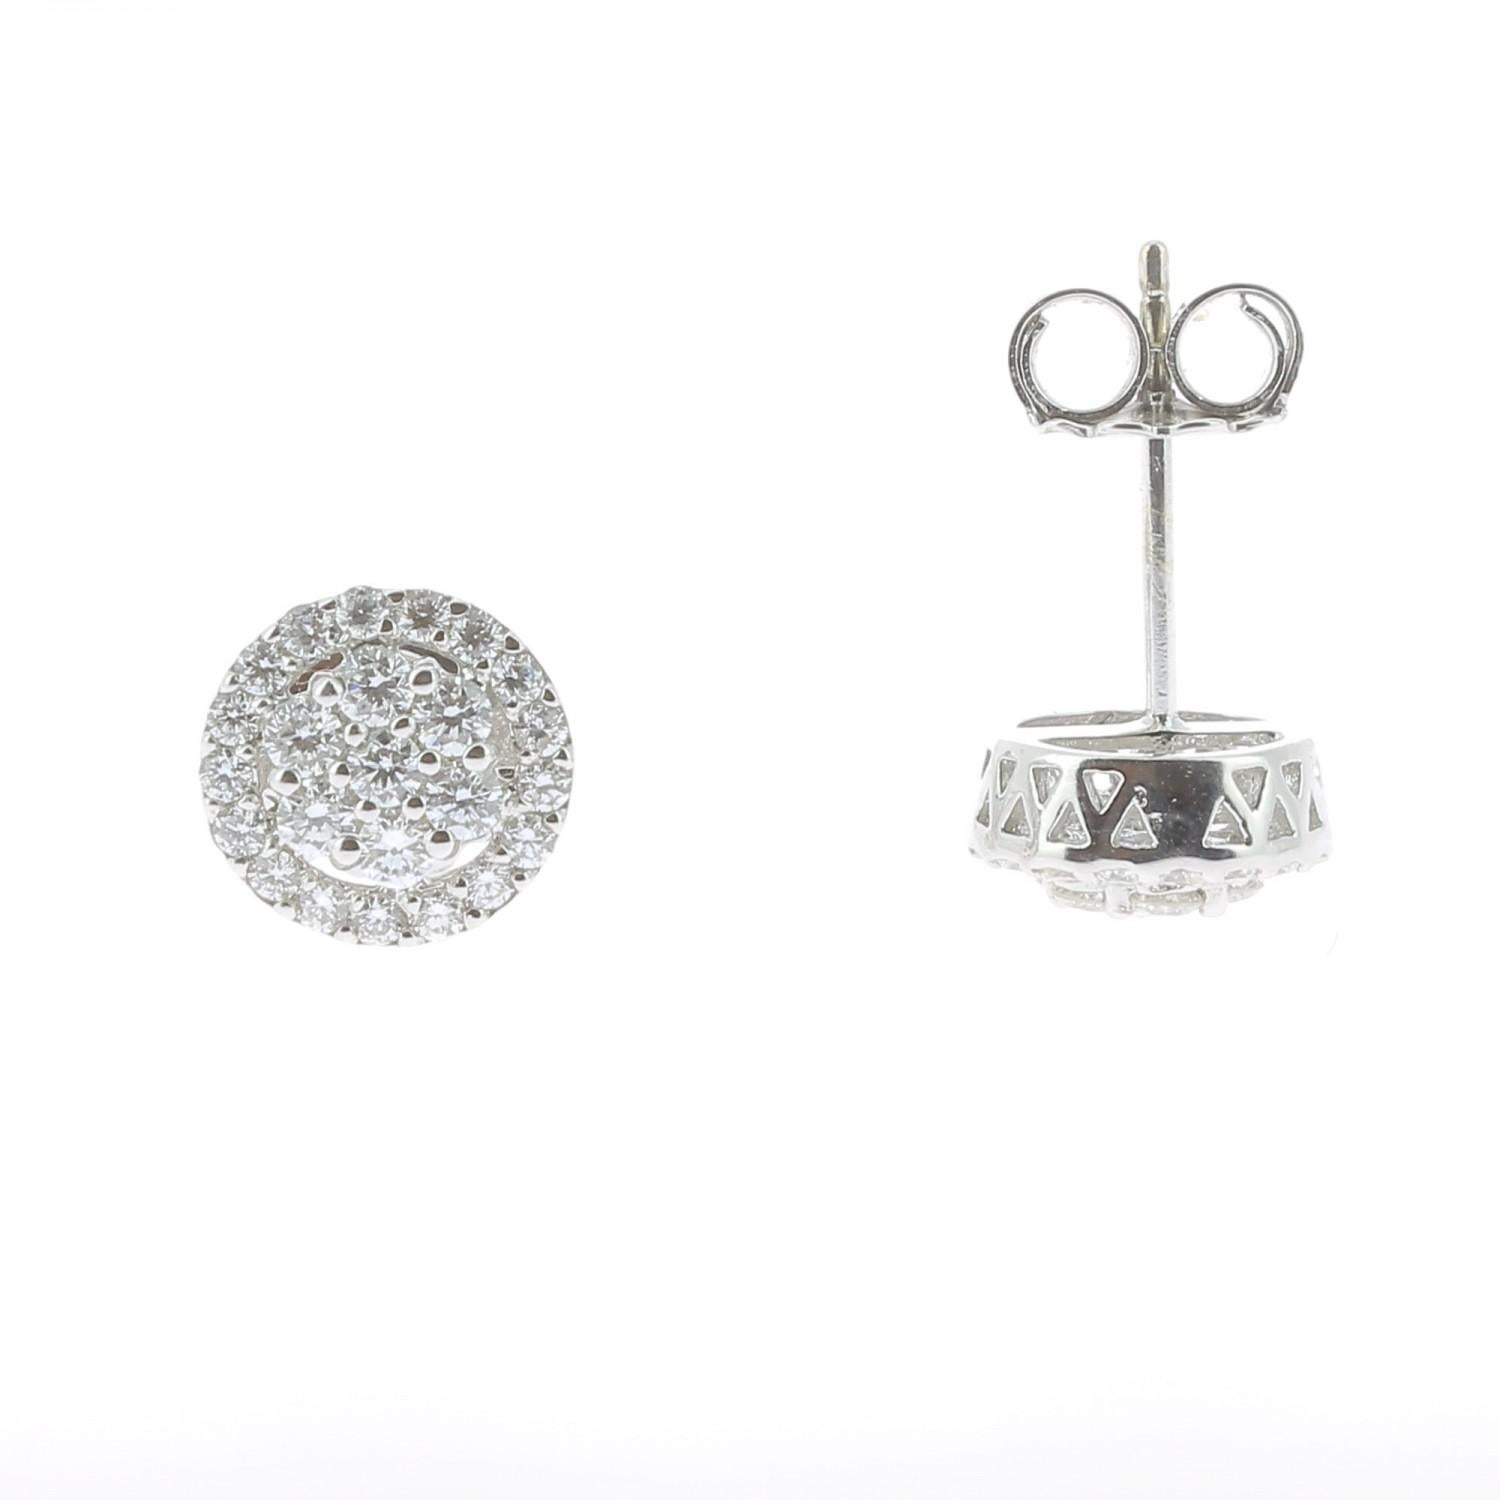 Die runden Diamanten Ohrringe sind mit 0,92 Karat besetzt
Die Diamanten sind GVS-Qualität.
Der Ohrstecker ist aus 18K Weißgold und wiegt 3,93 Gramm.
